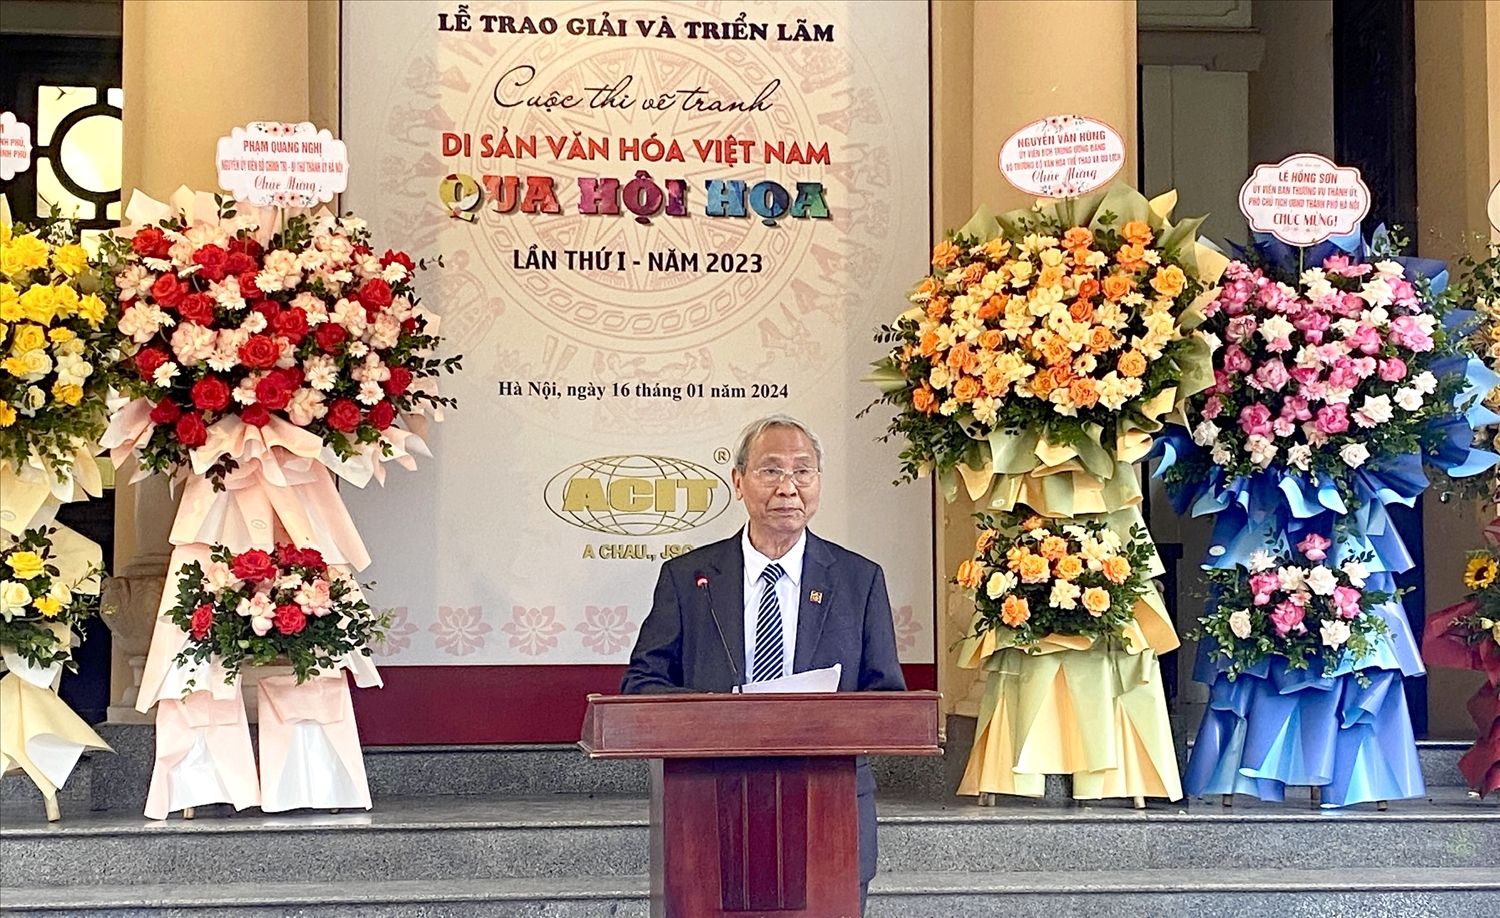 PGS.TS Đỗ Văn Trụ, Chủ tịch Hội Di sản văn hóa Việt Nam phát biểu khai mạc Lễ trao giải .